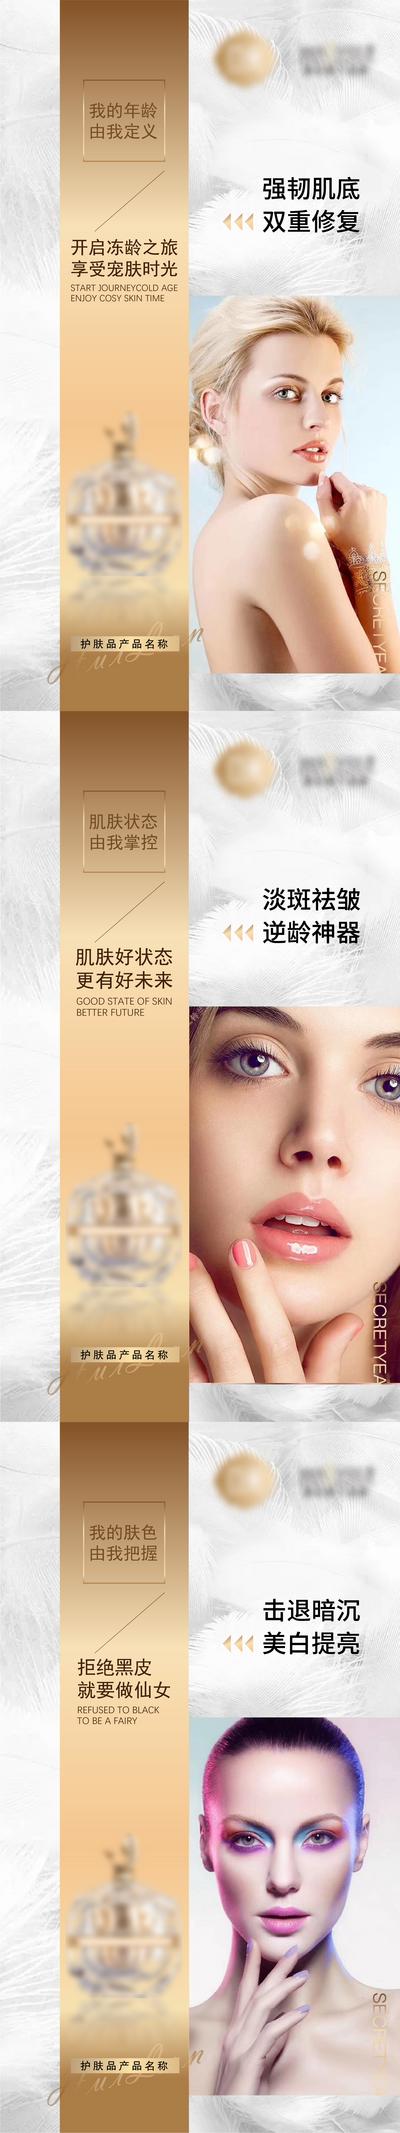 南门网 海报 微商 化妆品 护肤品 产品 人物